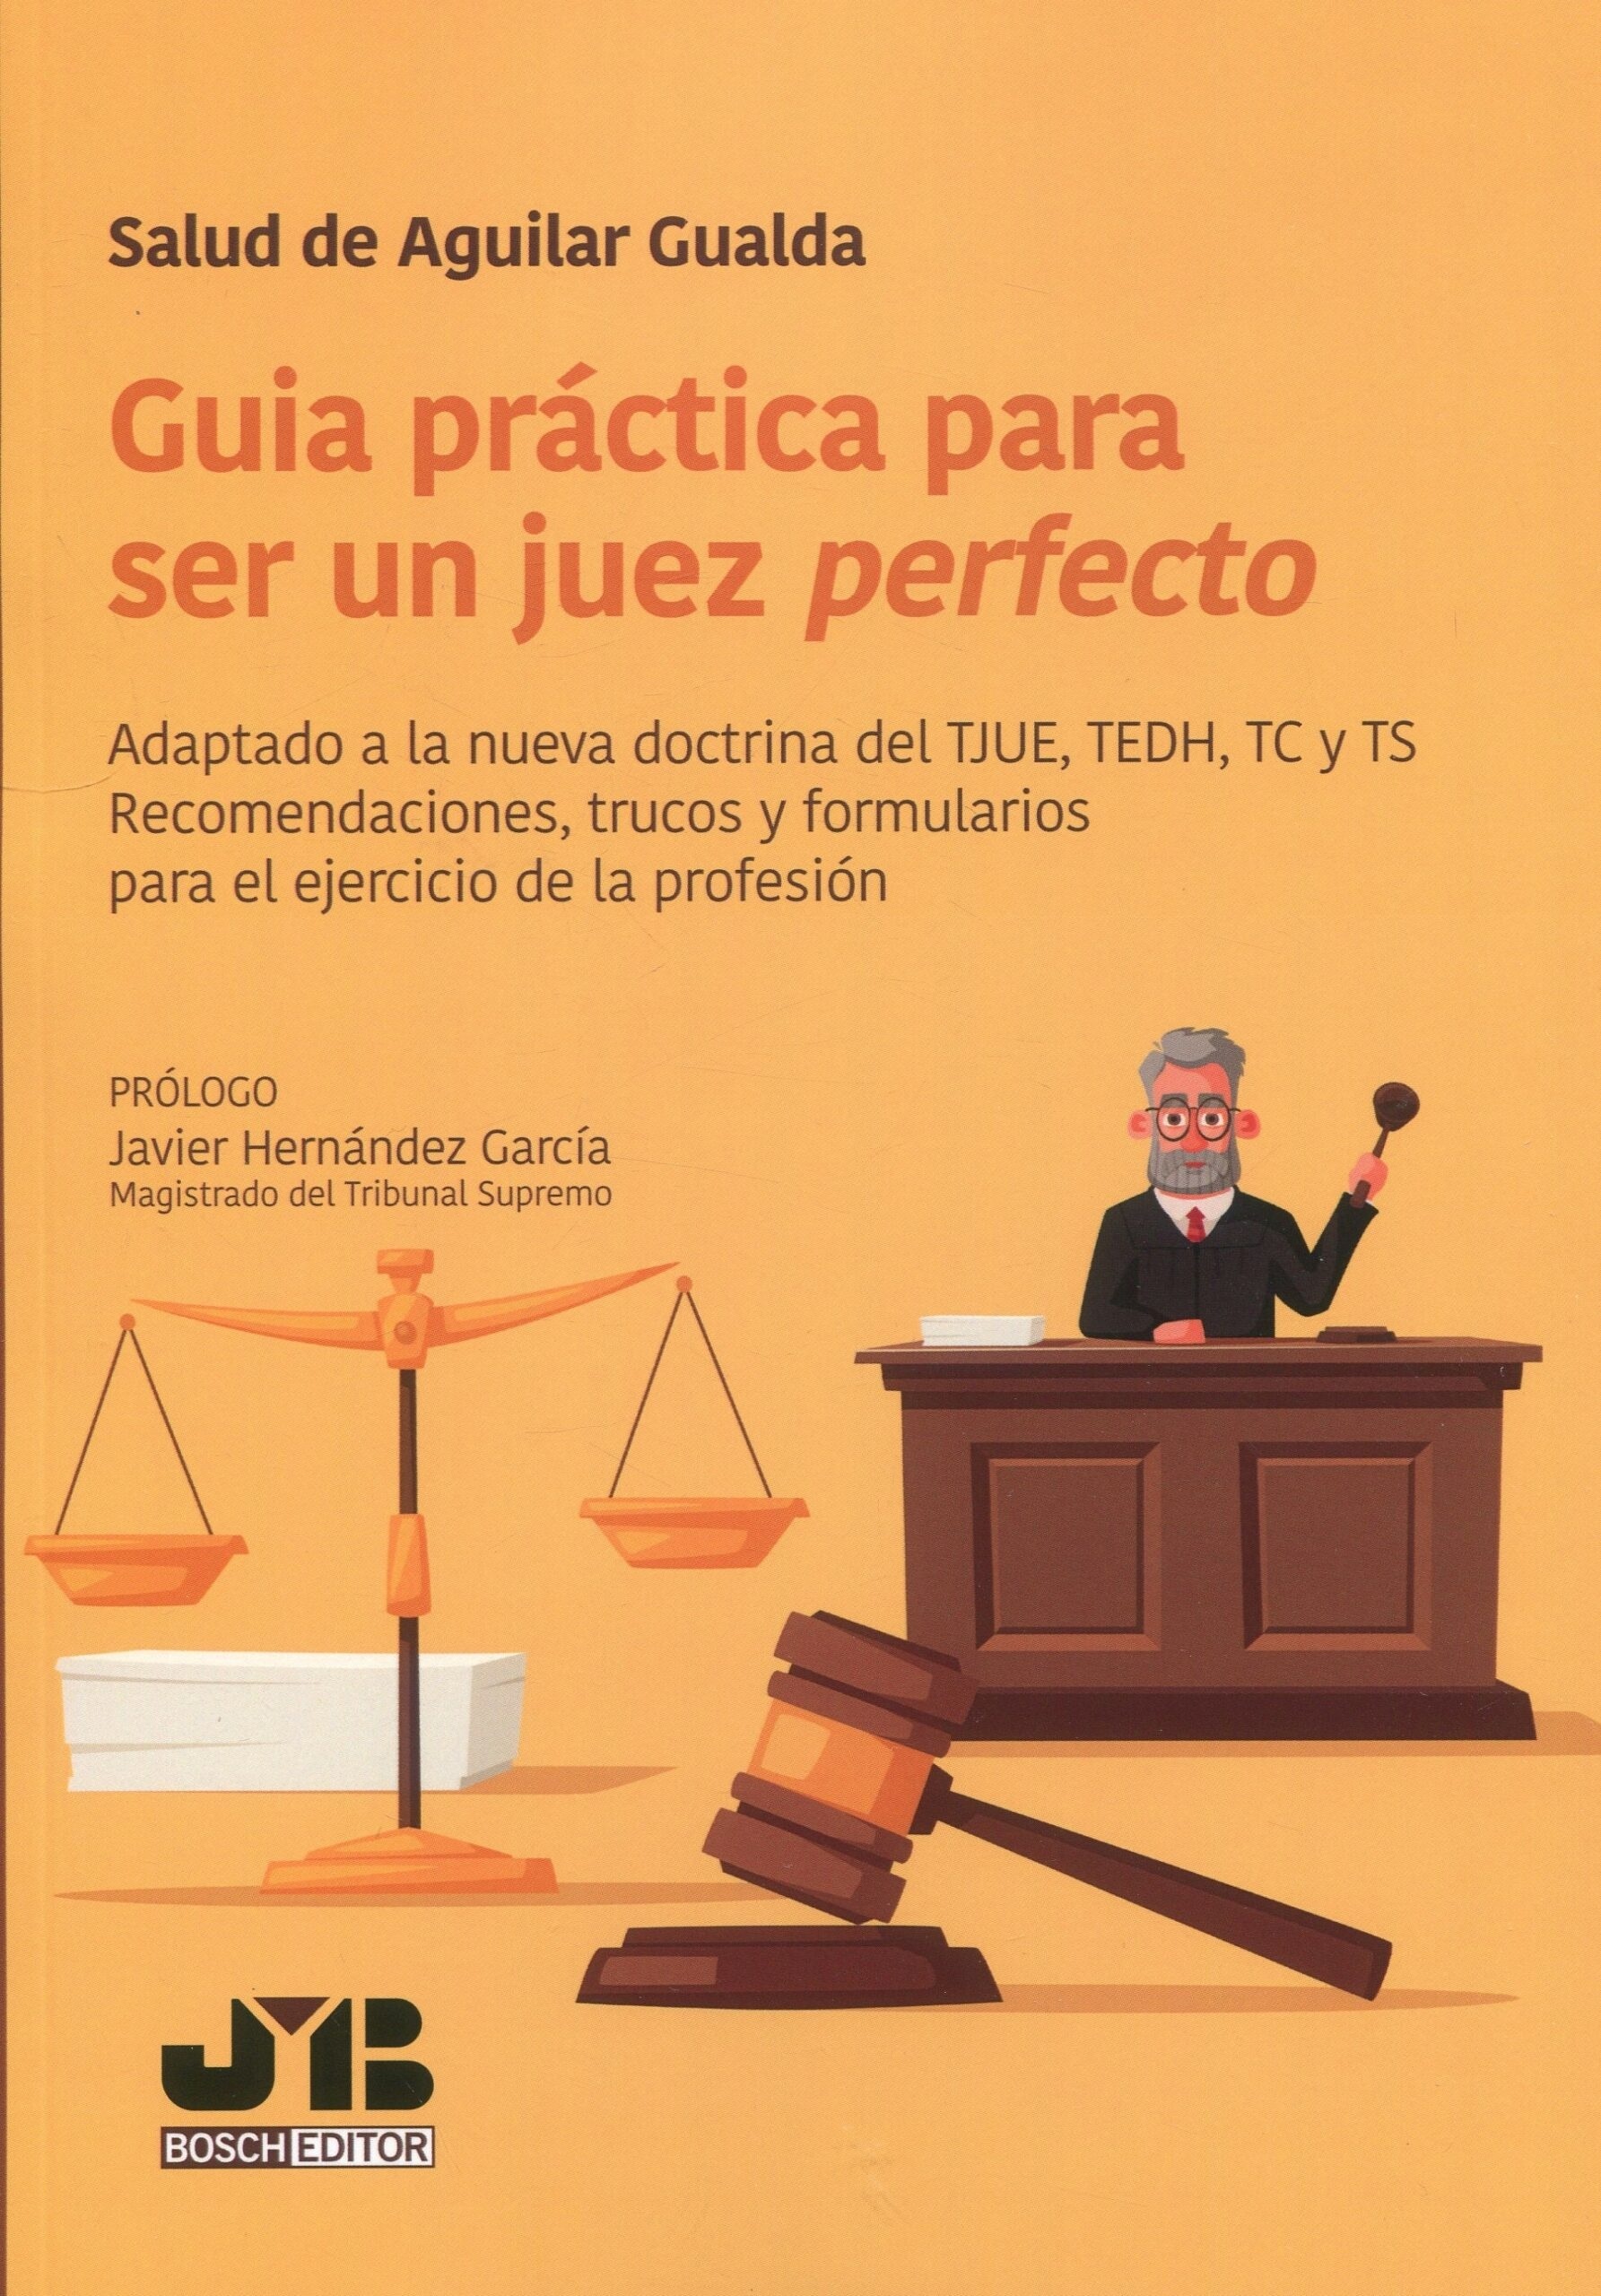 Guía práctica para ser un juez perfecto "Adaptado a la nueva doctrina del TJUE, TEDH, TC y TS. Recomendaciones, trucos y formularios para el ejercicio de la profesión"